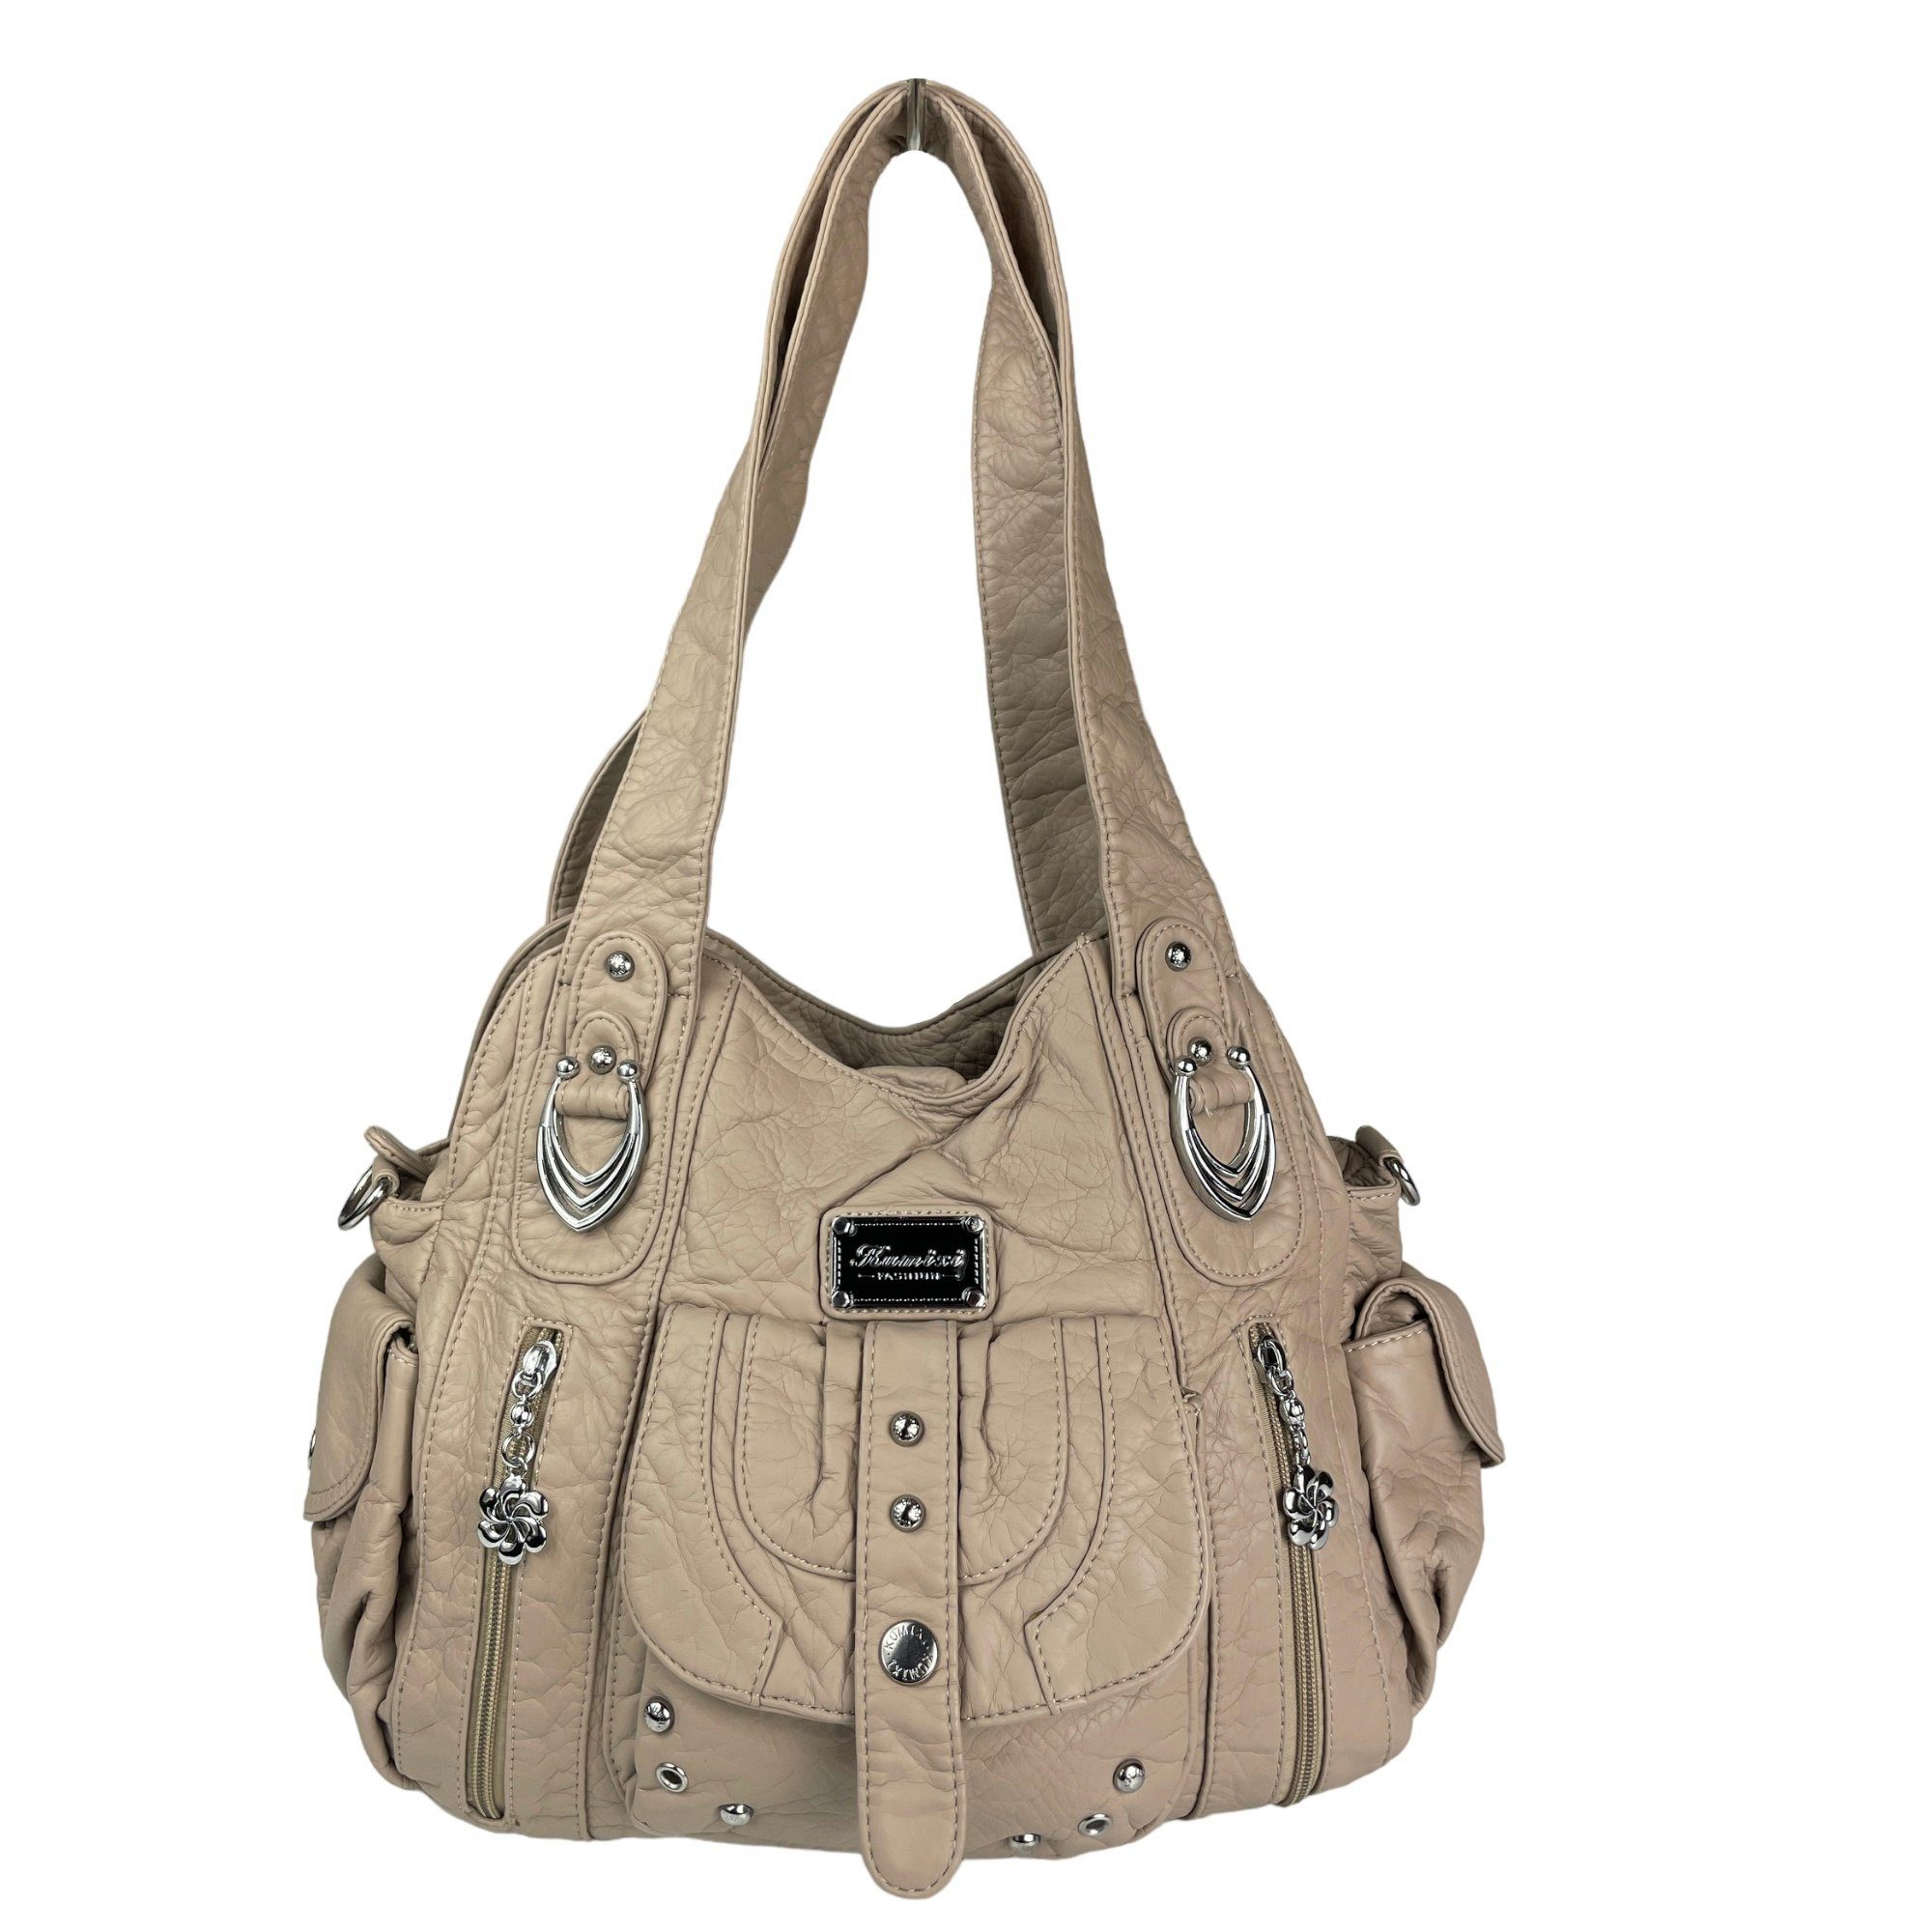 AKW22026, Schultertasche beige Damen Tragegriffe Schulterriemen, & lange abnehmbarer Schultertasche Taschen4life Handtasche